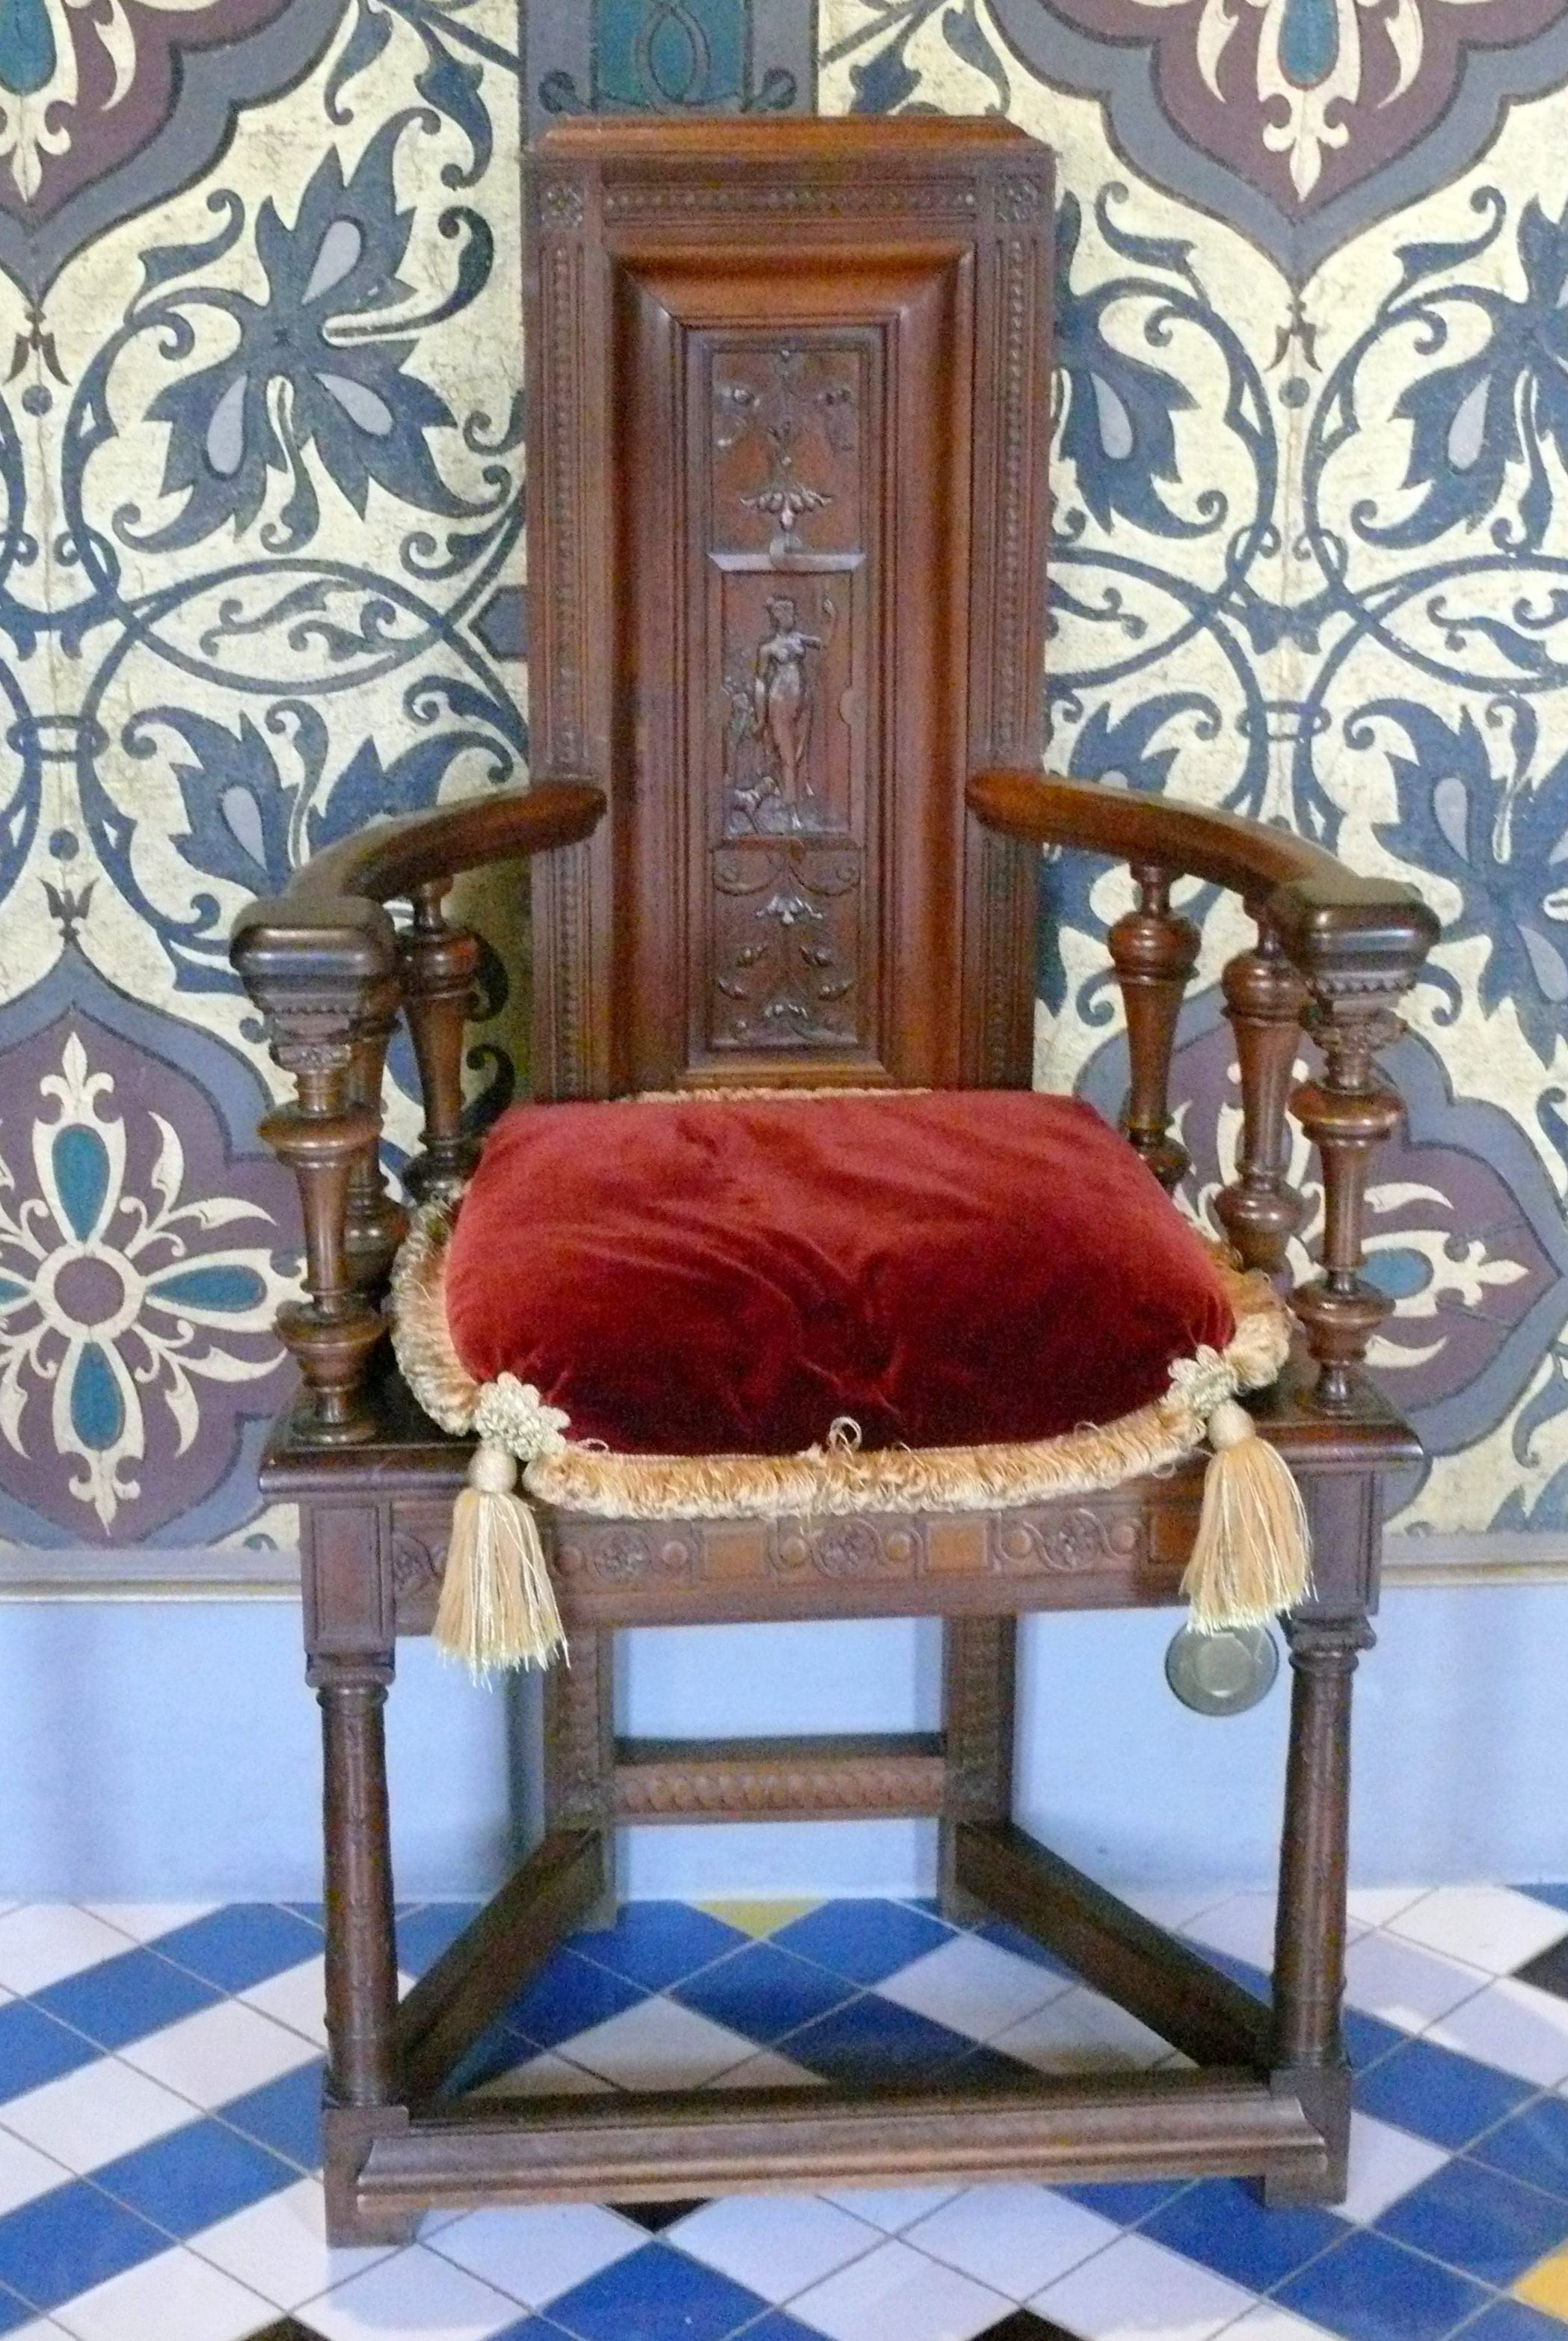 Caquetoire chair